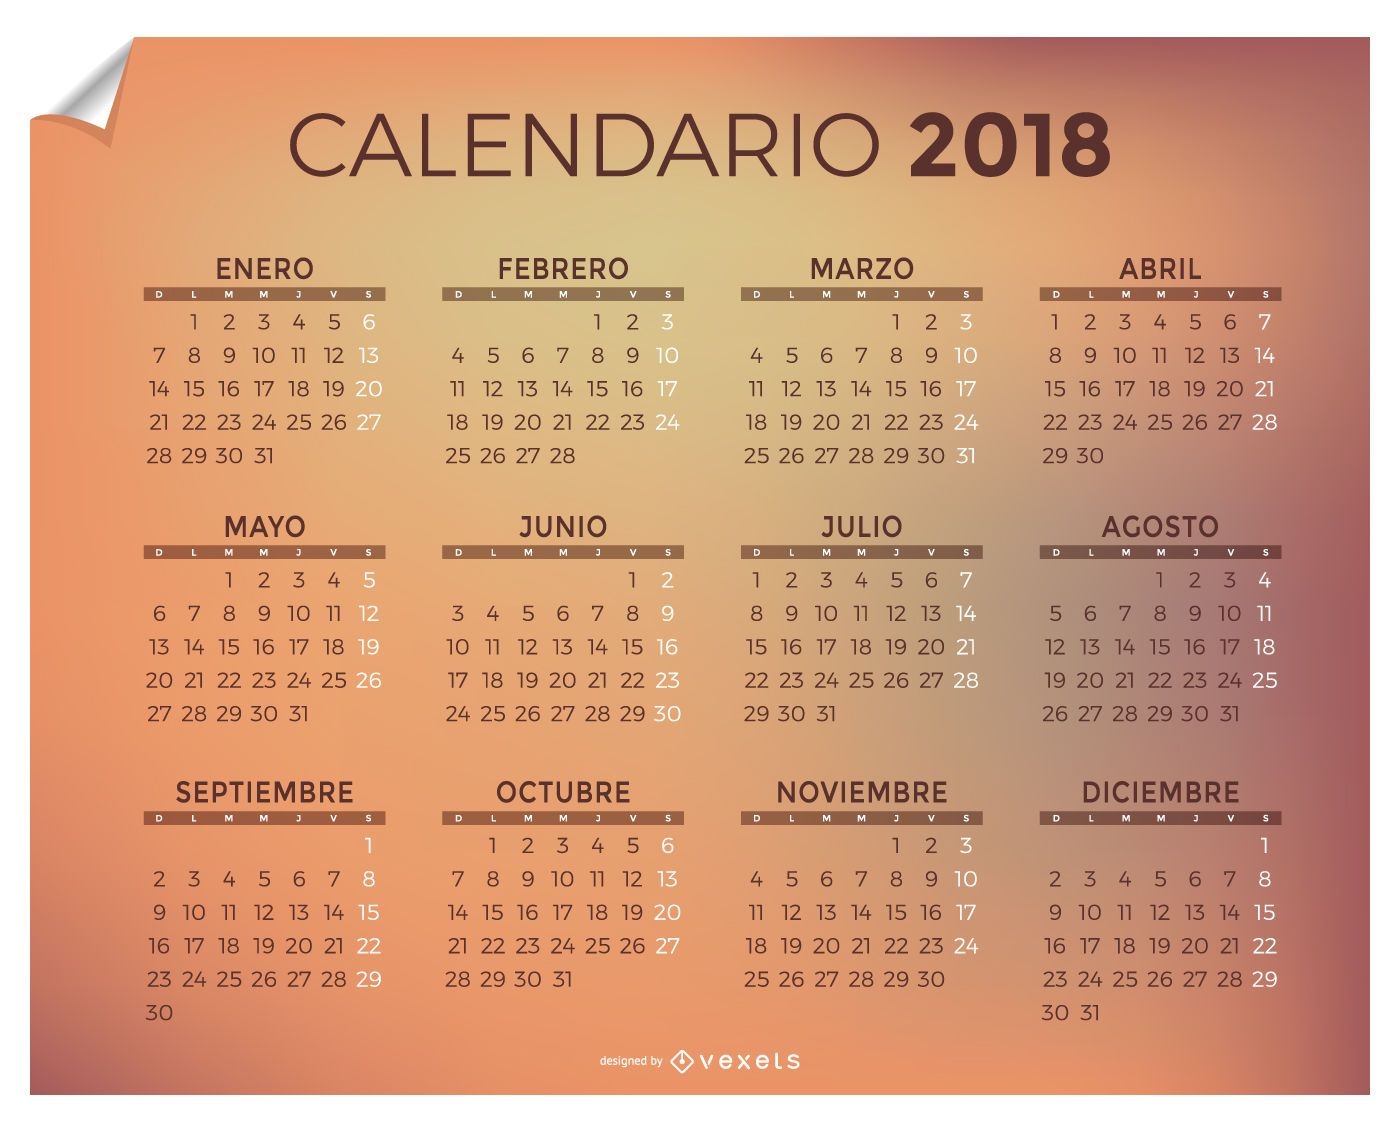 2018 Calendar in Spanish